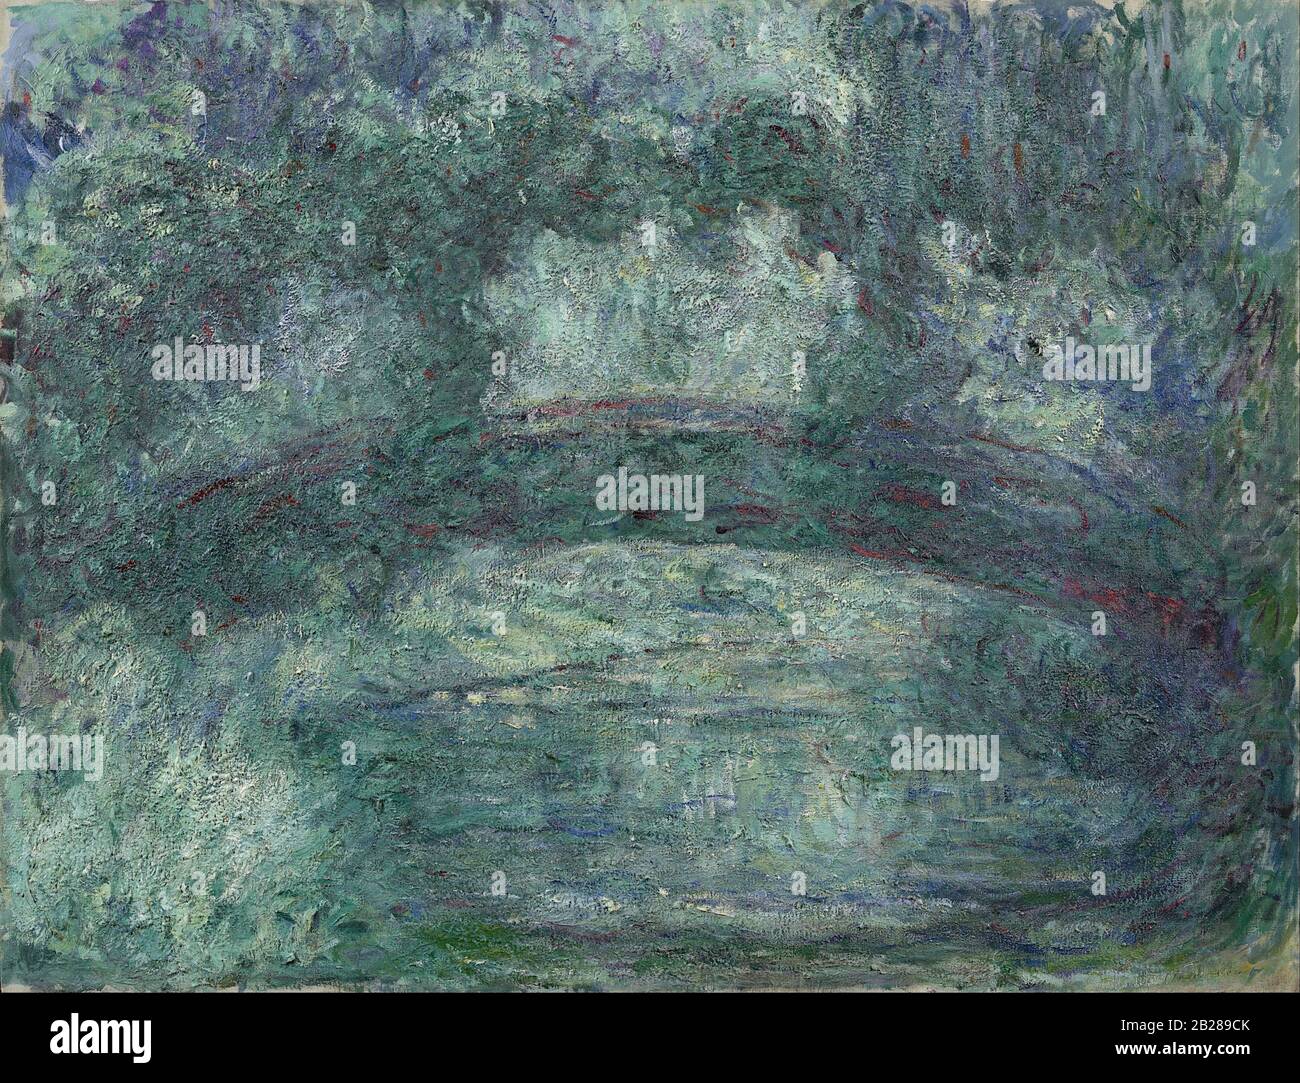 Le pont japonais (vers 1920) Peinture de Claude Monet - Très haute résolution et image de qualité Banque D'Images